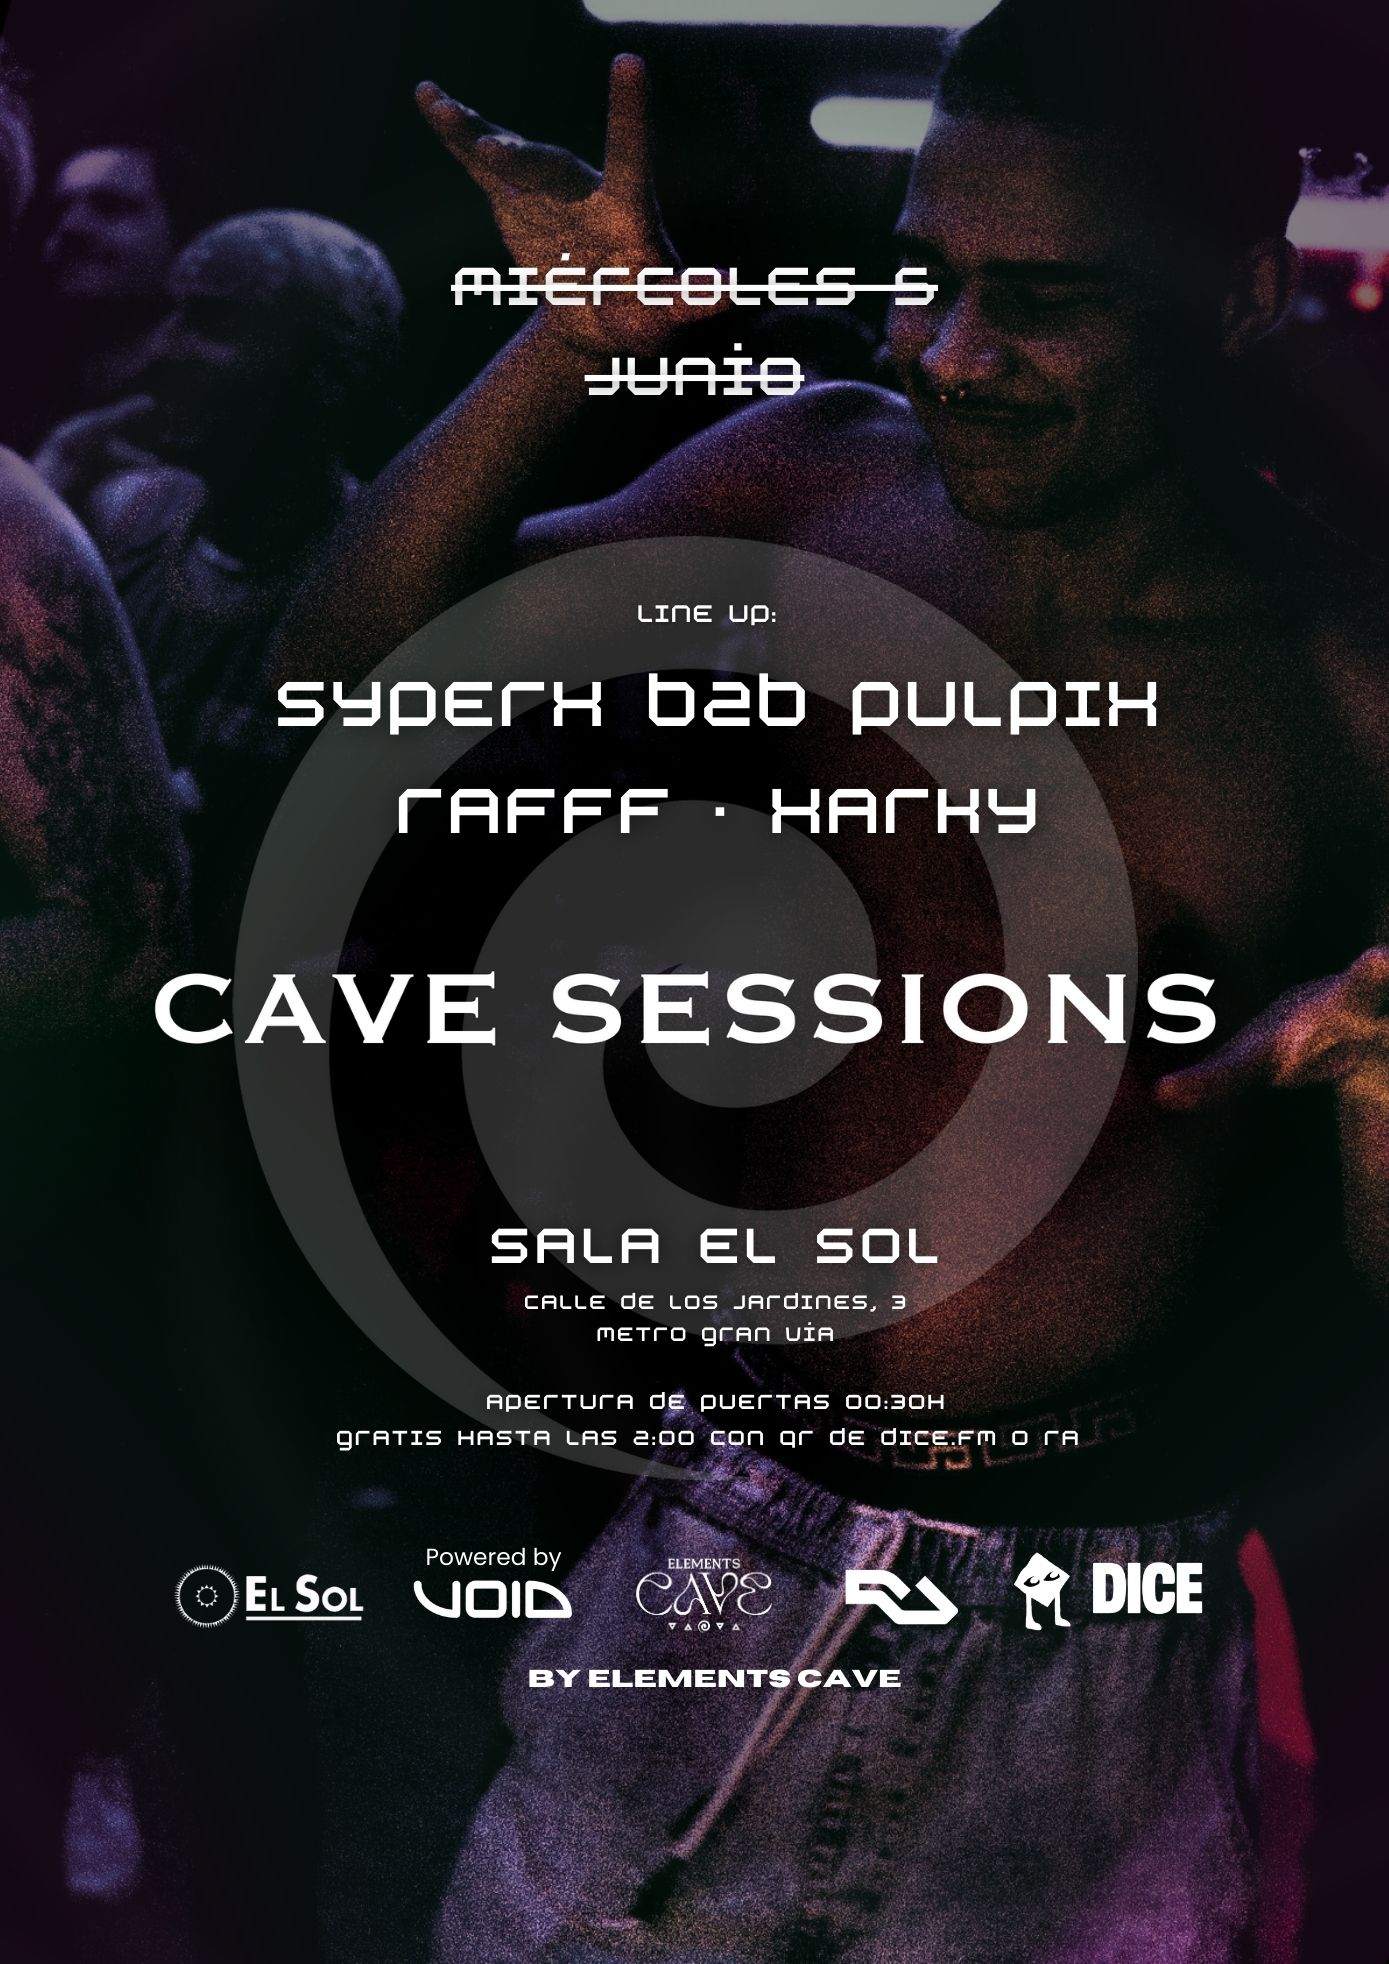 Cave Sessions by EC: Entrada gratis hasta las 2:00 con RA - フライヤー表